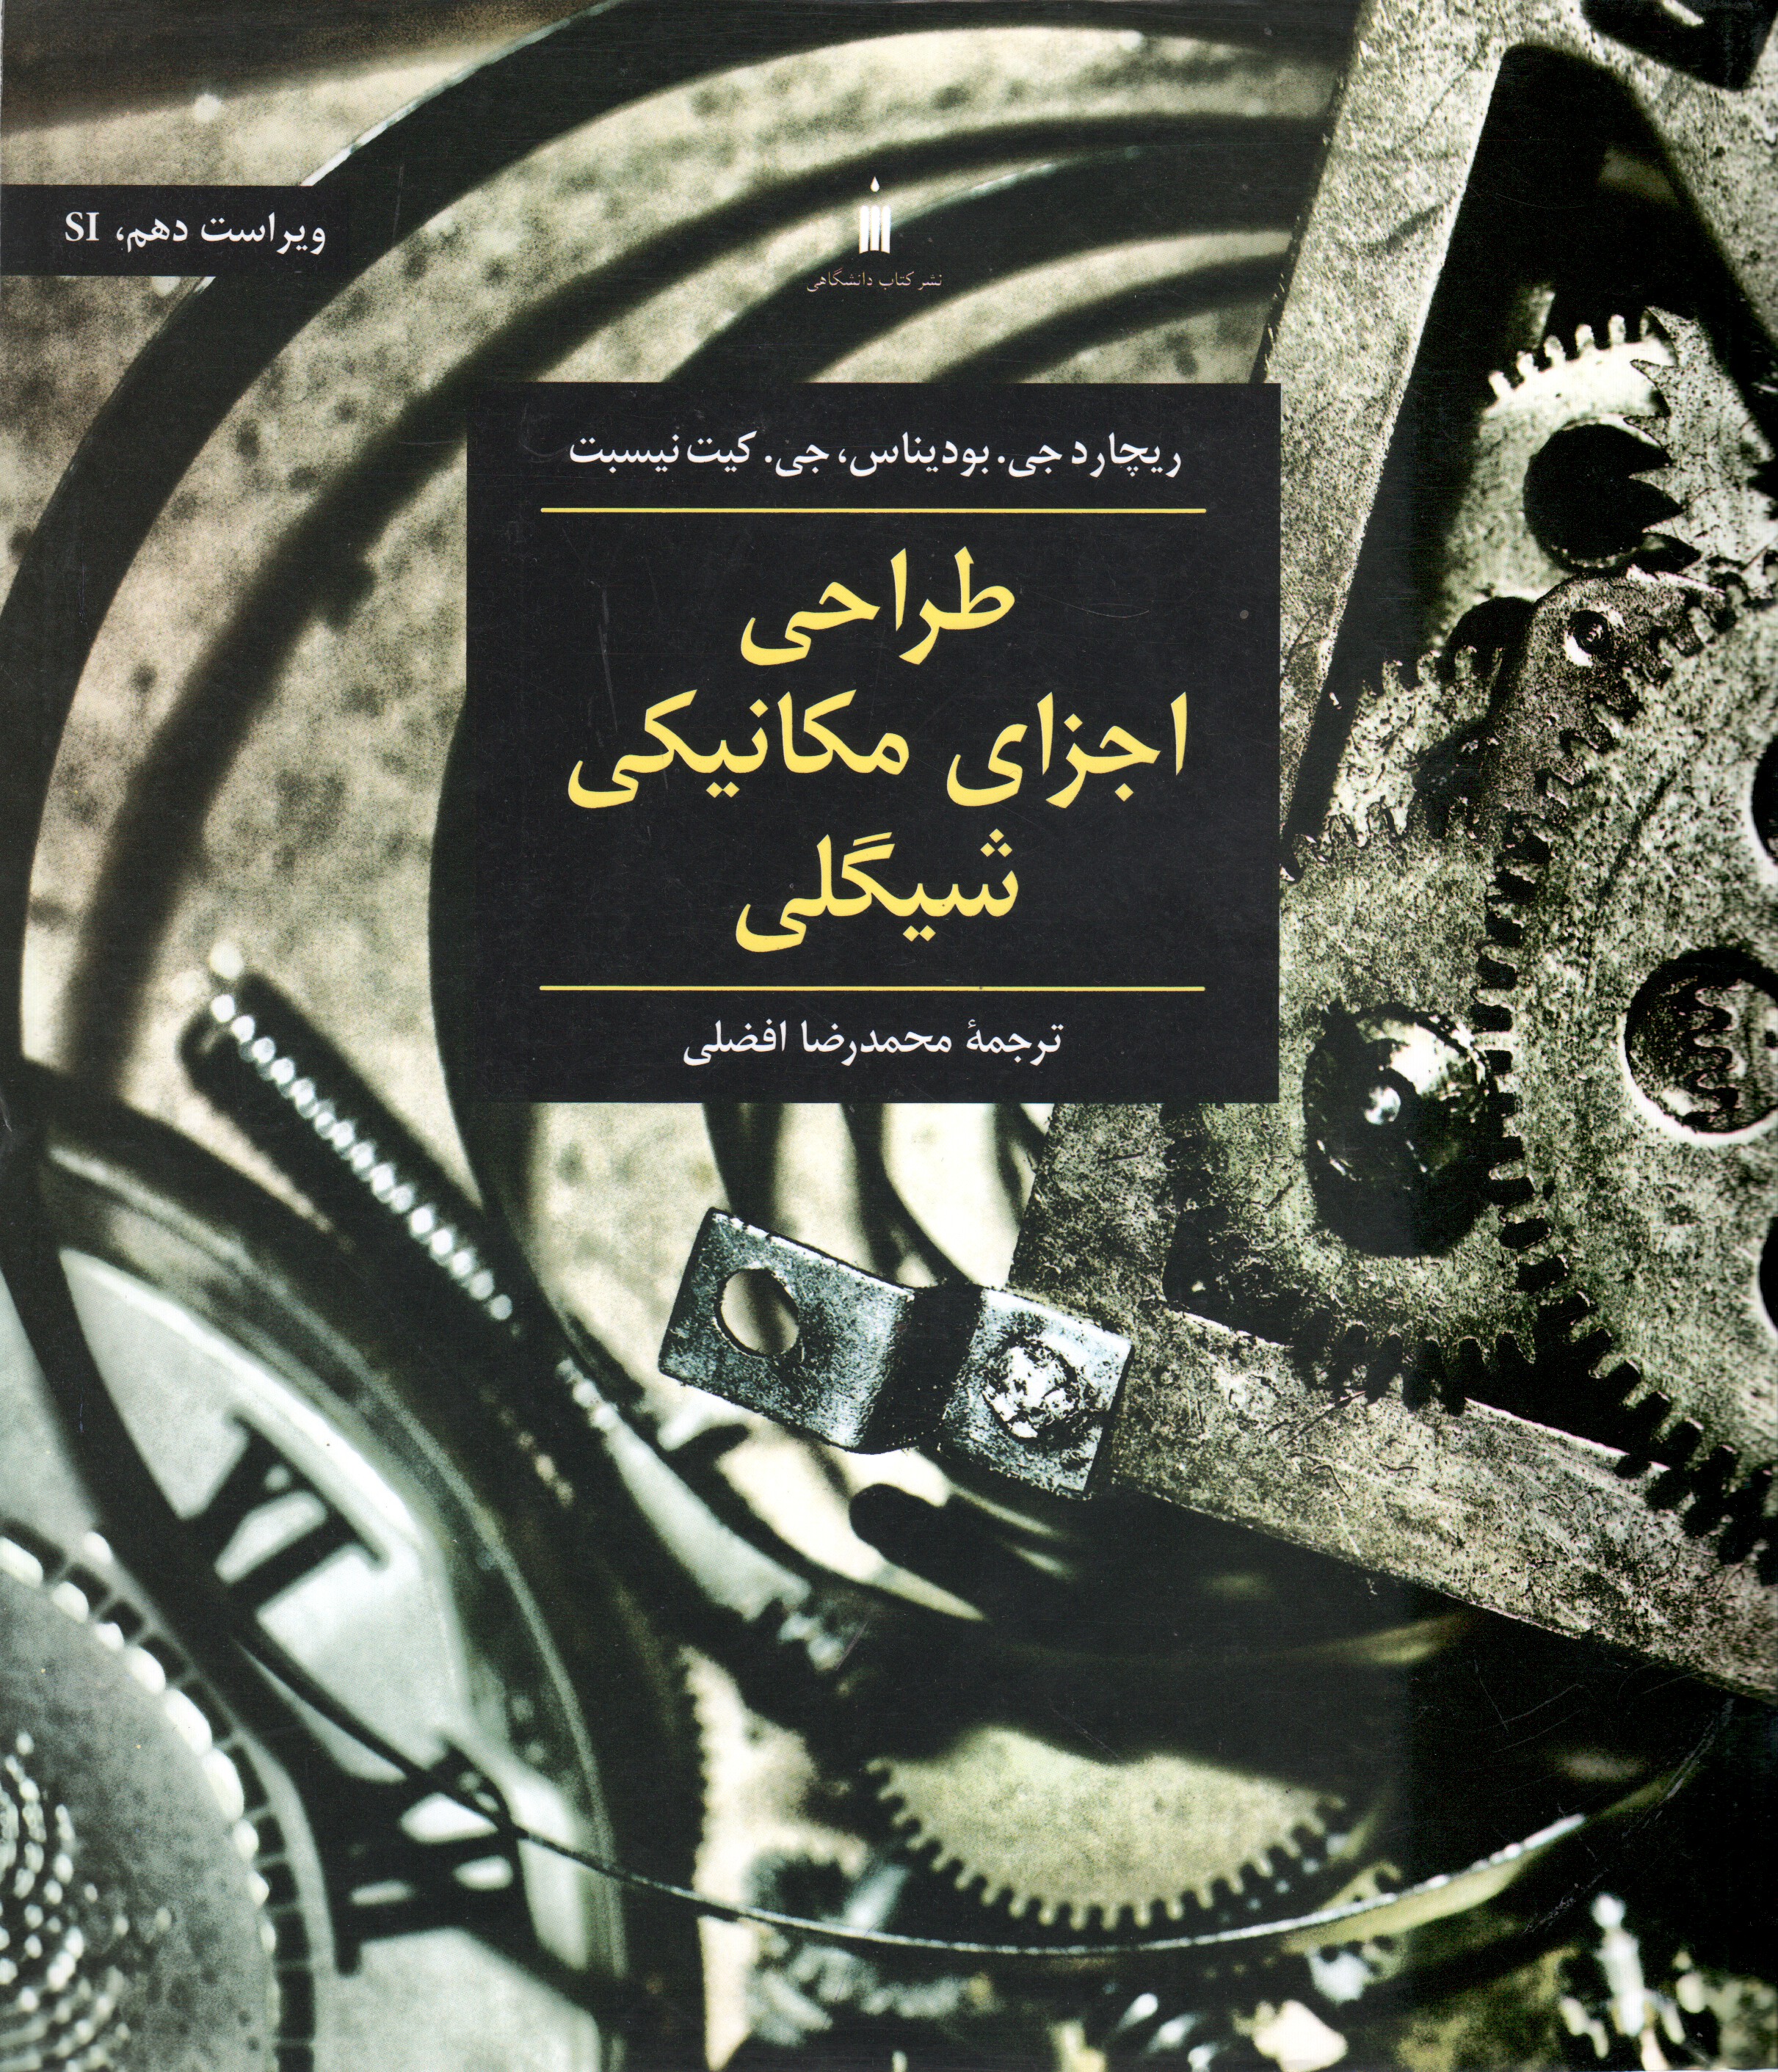 طراحی اجزای مکانیکی شیگلی ترجمه محمدرضا افضلی